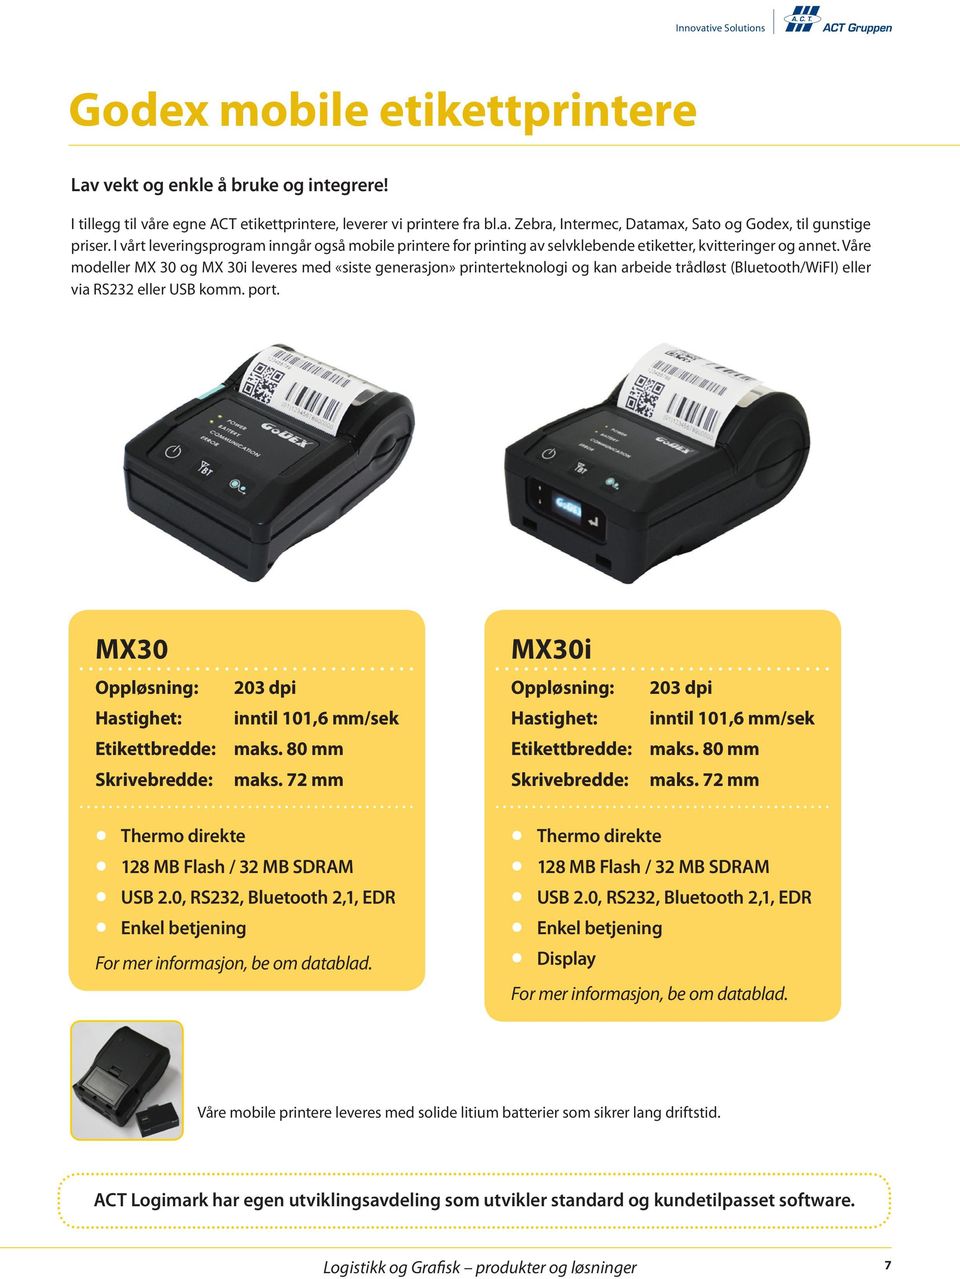 Våre modeller MX 30 og MX 30i leveres med «siste generasjon» printerteknologi og kan arbeide trådløst (Bluetooth/WiFI) eller via RS232 eller USB komm. port.